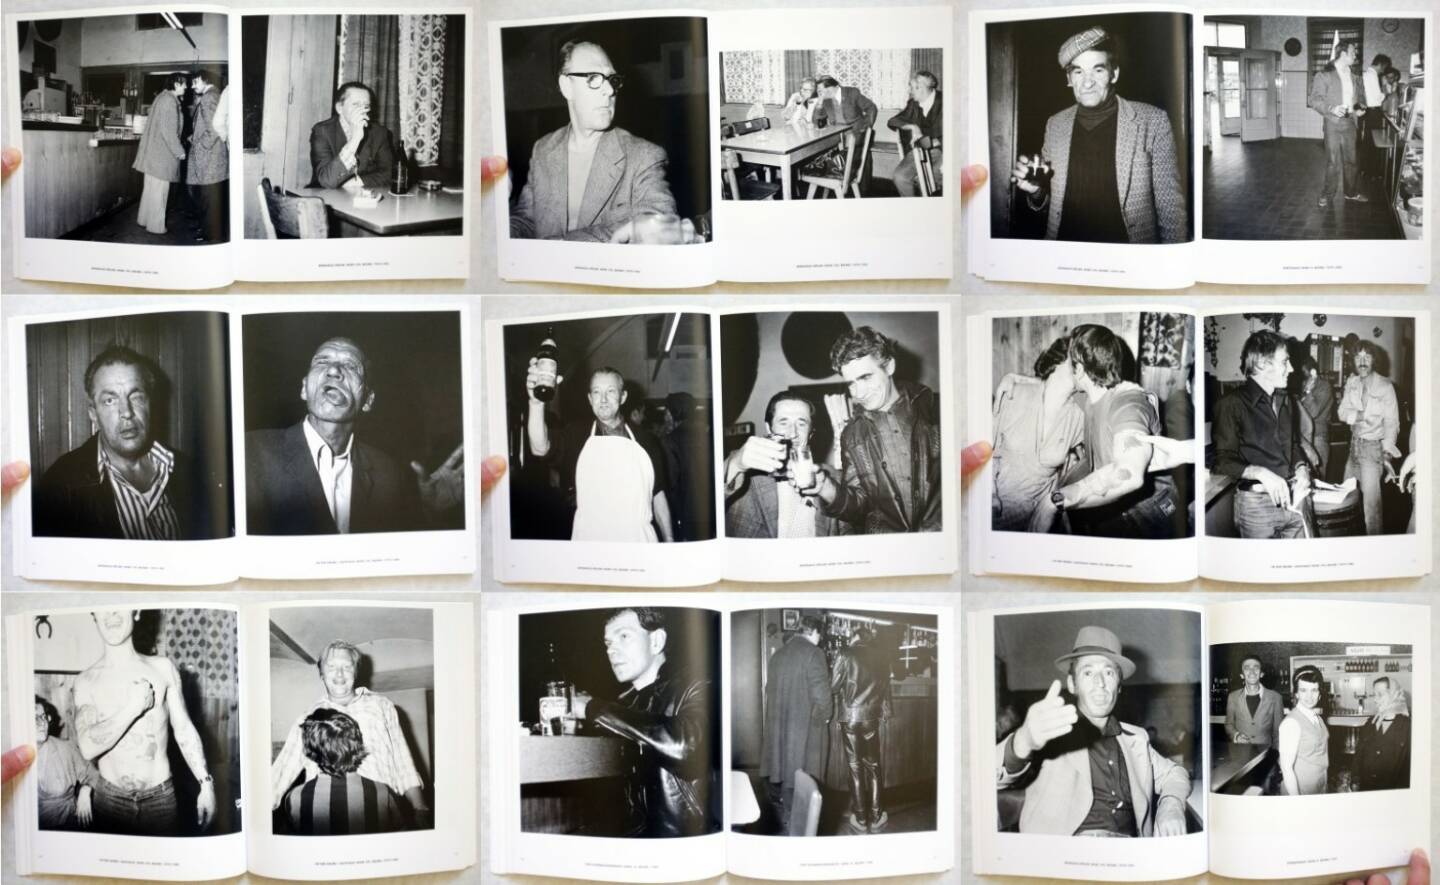 Leo Kandl - Weinhaus. Fotografien 1977-1984, Edition Stemmle, 1999, Beispielseiten, sample spreads - http://josefchladek.com/book/leo_kandl_-_weinhaus_fotografien_1977-1984